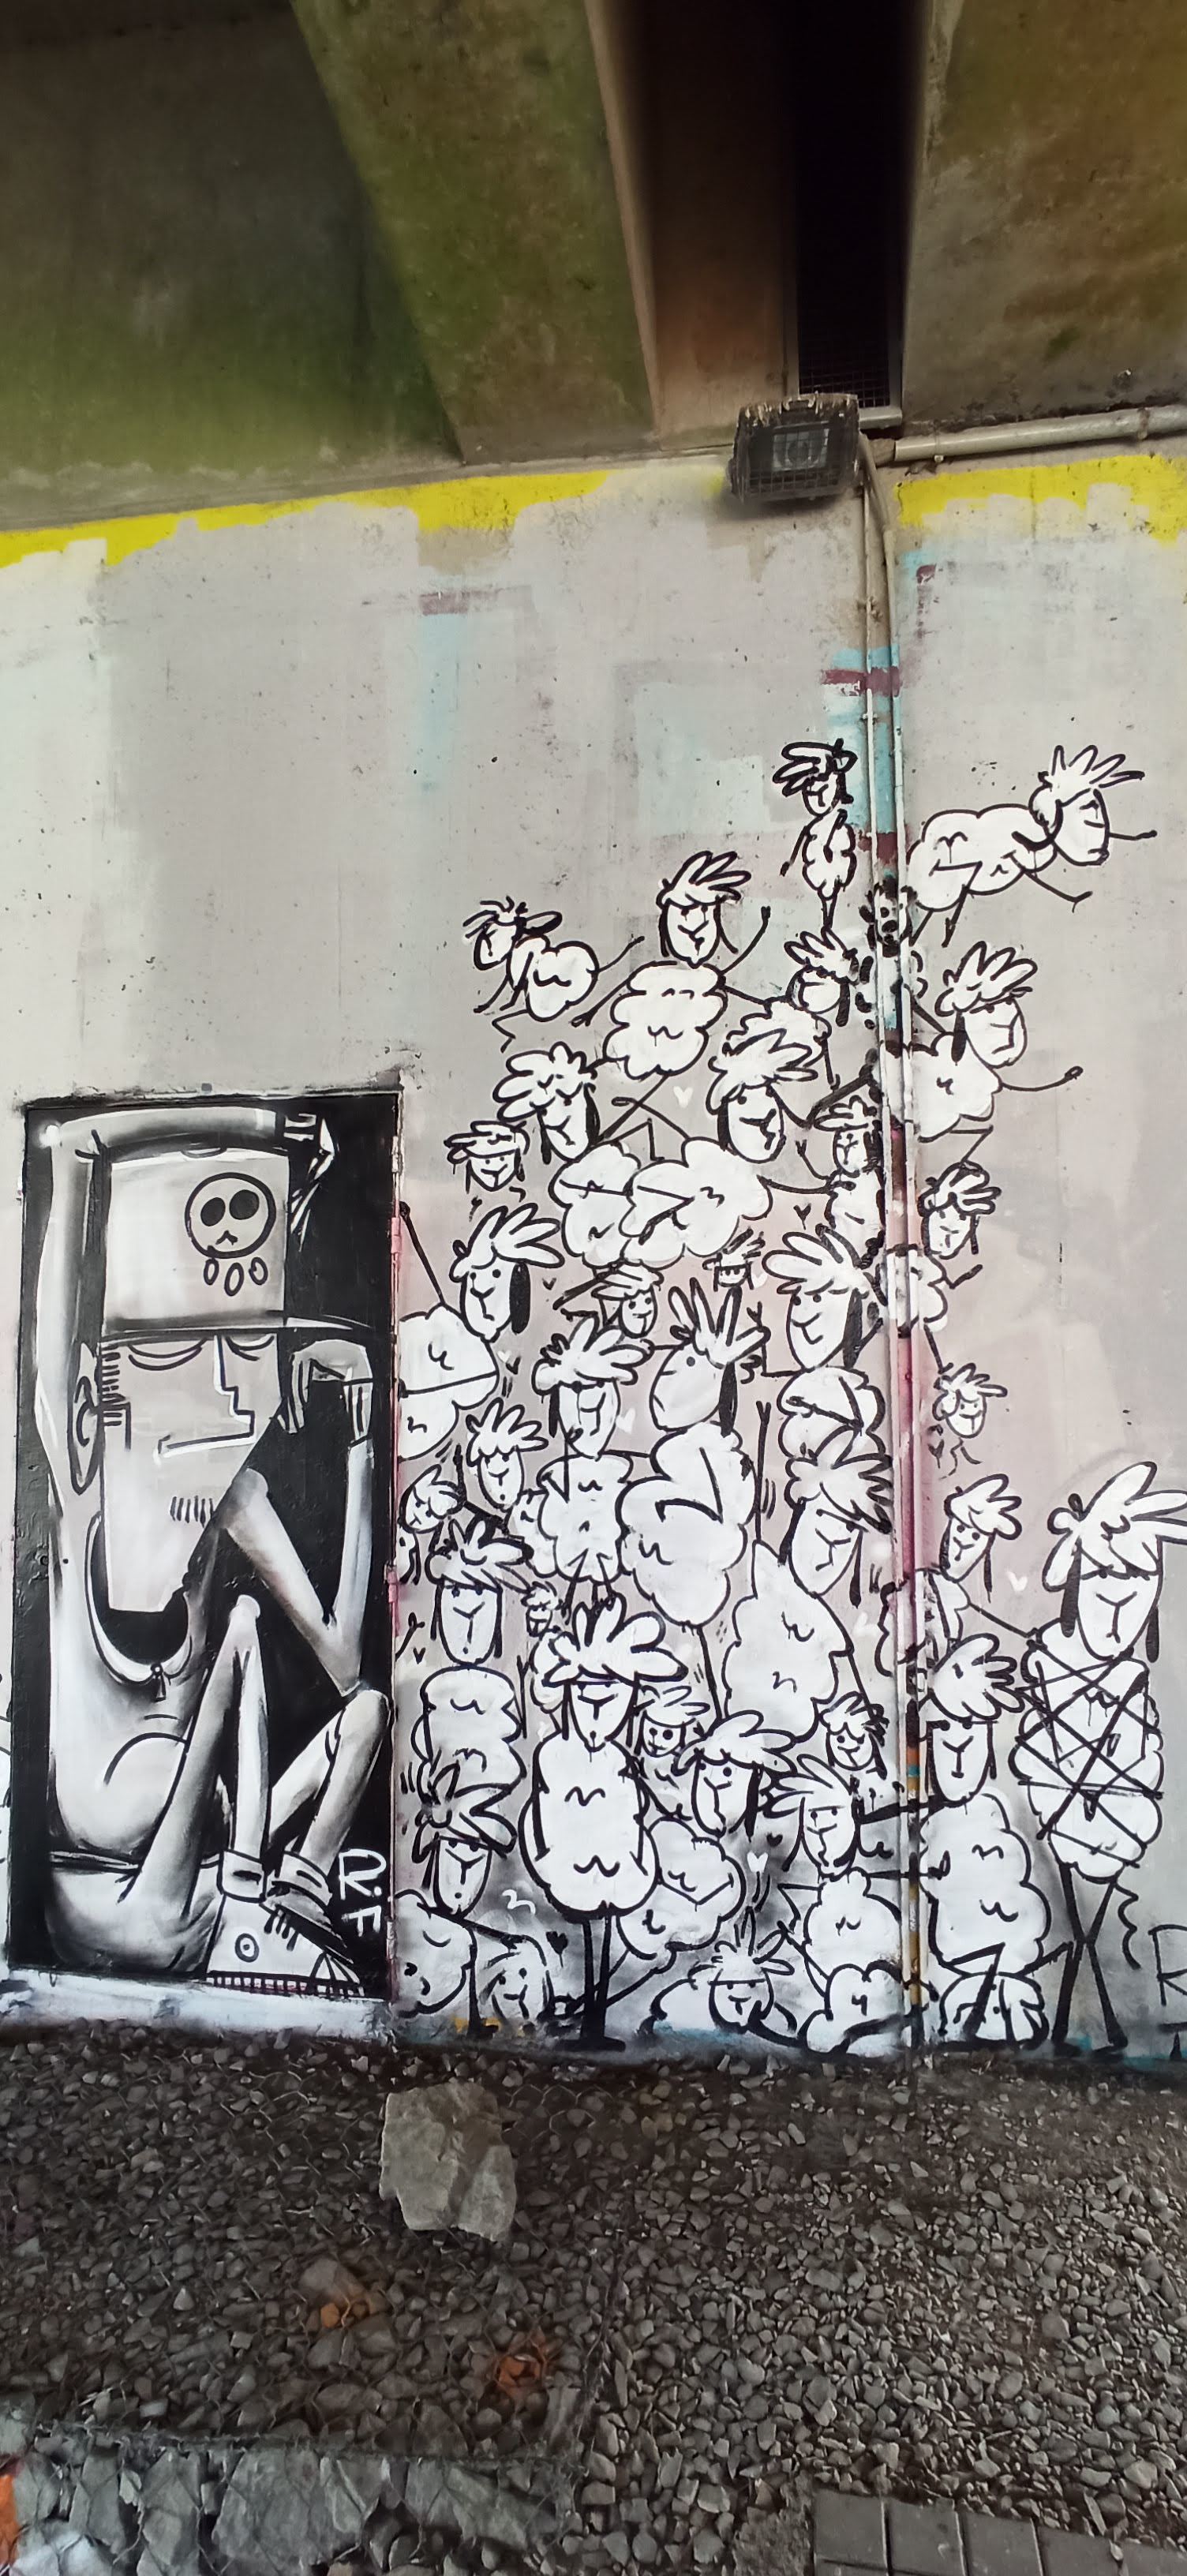 Graffiti 5047  capturé par Rabot à Nantes France